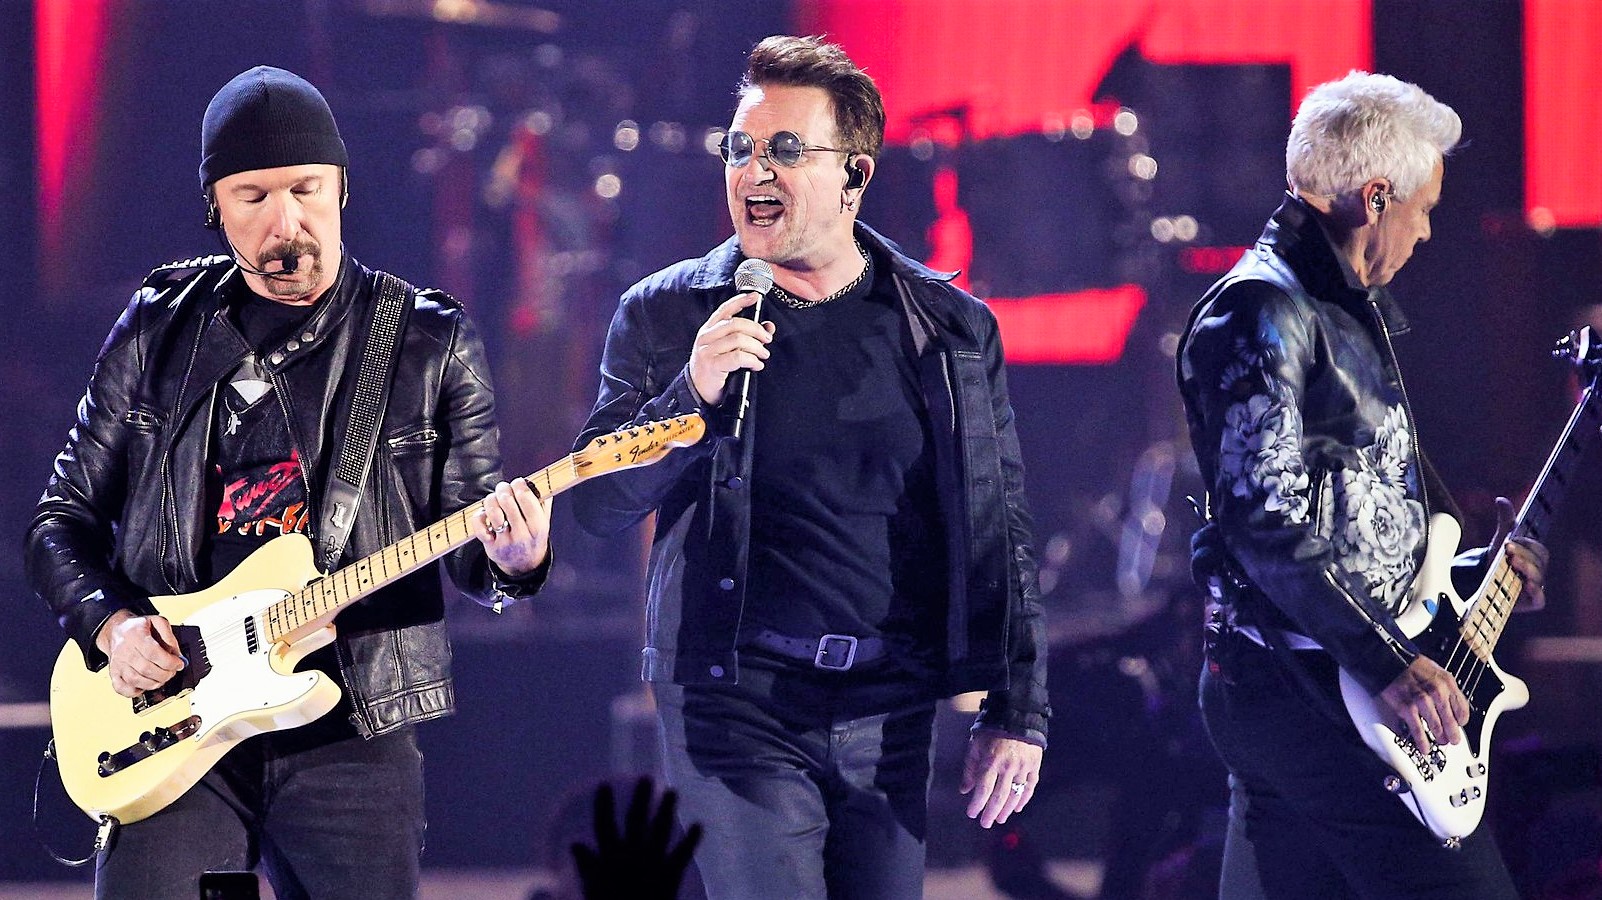 Ο Bono και οι U2 τραγούδησαν για καλό σκοπό στο Δουβλίνο